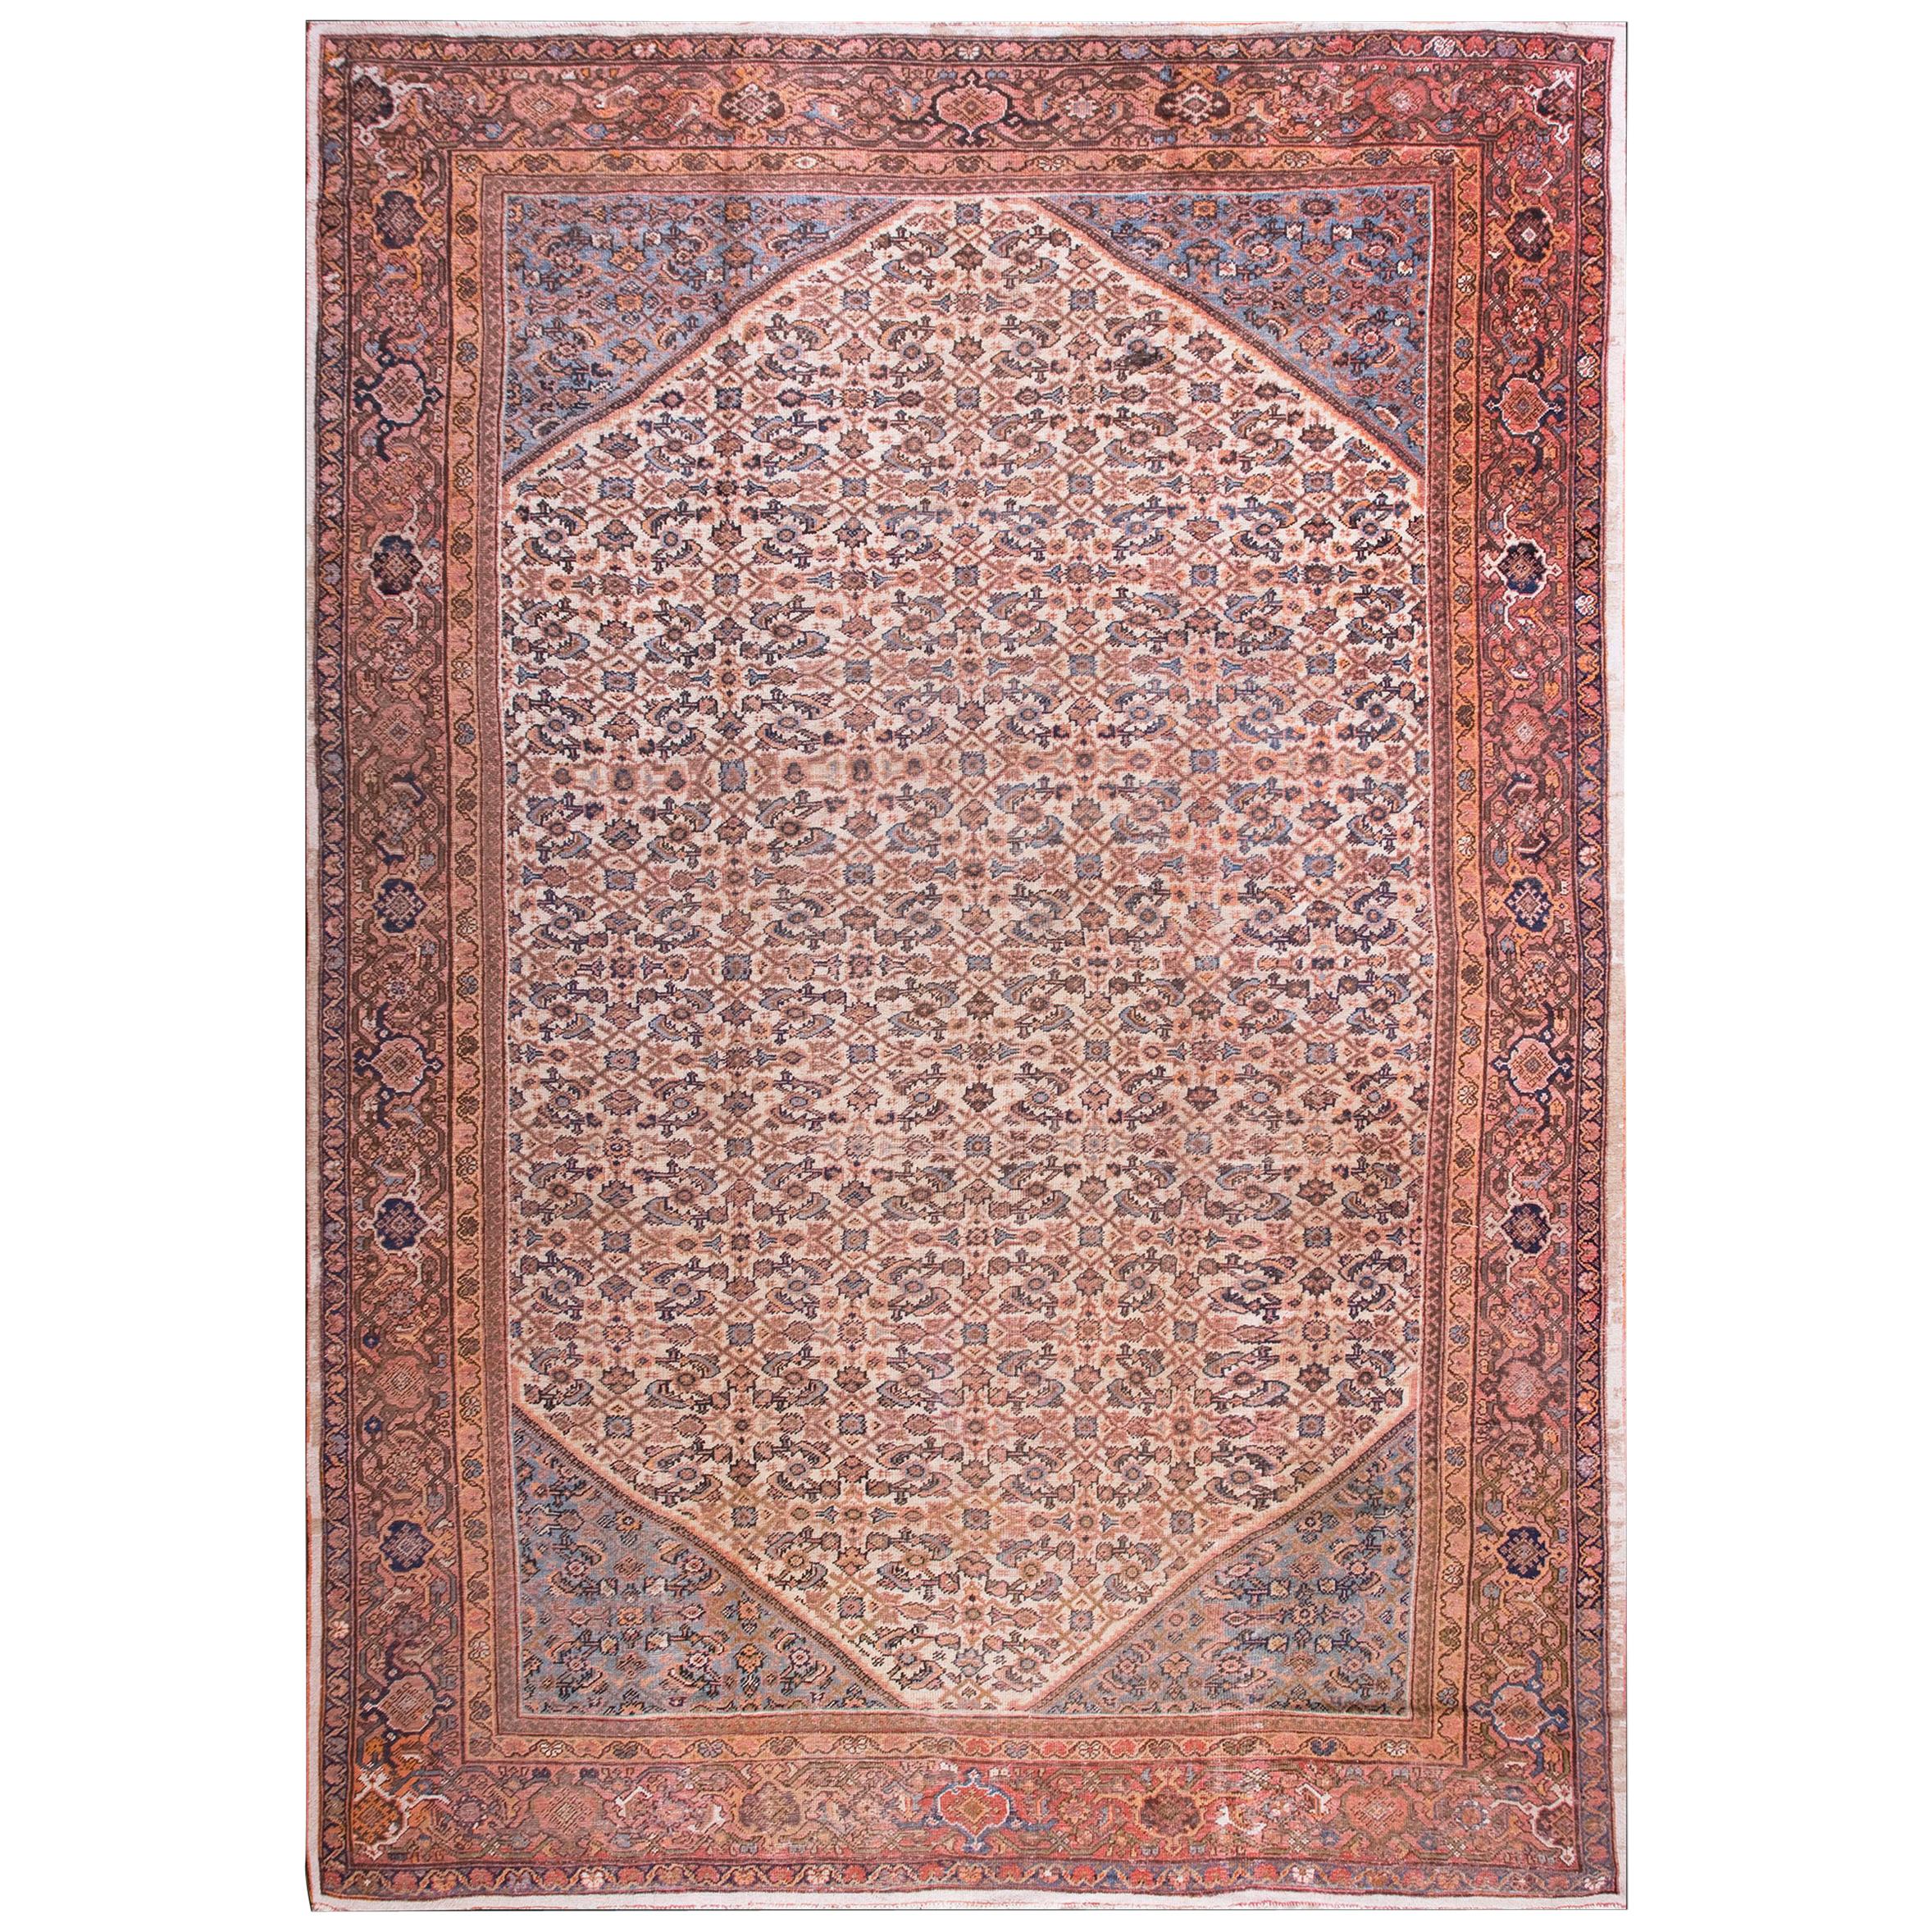 Persischer Mahal-Teppich des frühen 20. Jahrhunderts ( 11'10" x 16' - 360 x 488 )